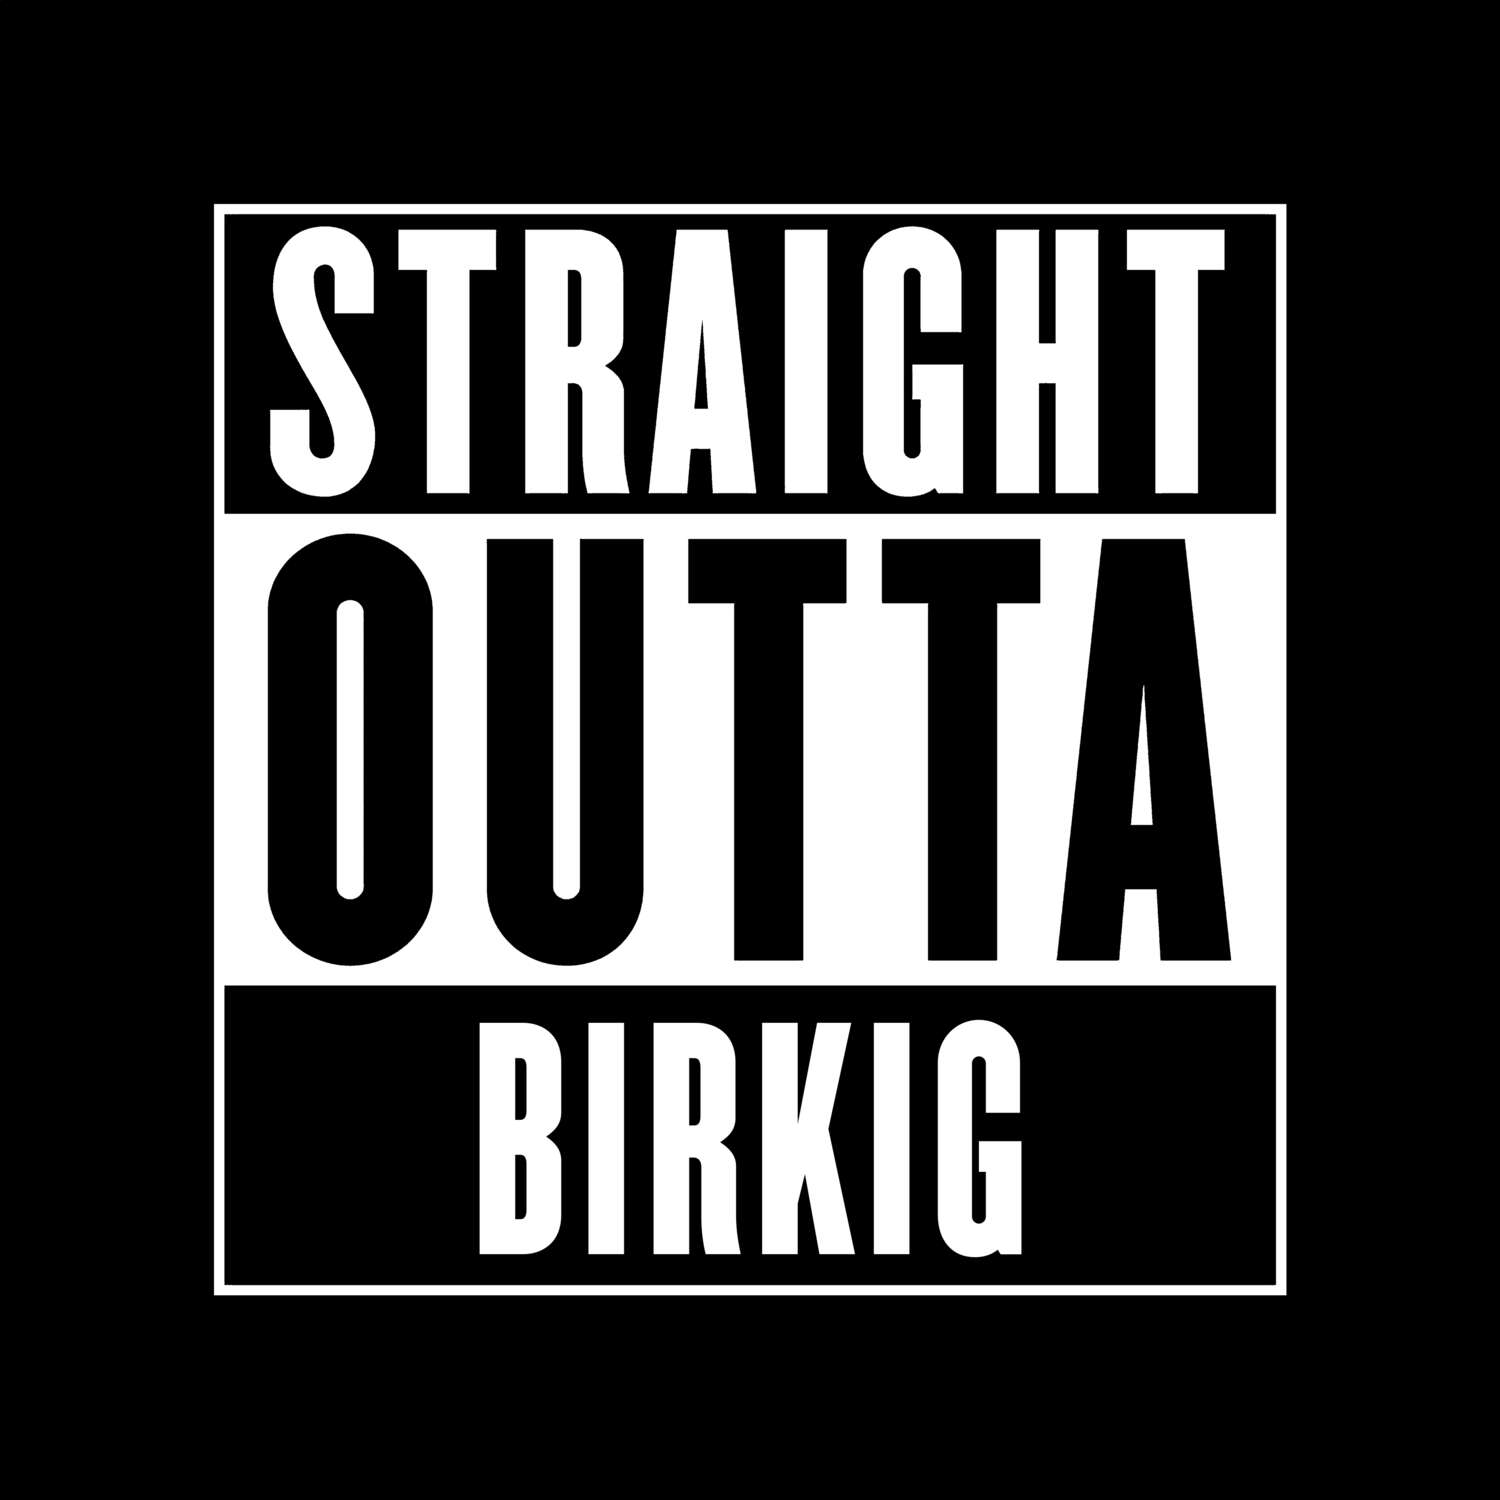 Birkig T-Shirt »Straight Outta«